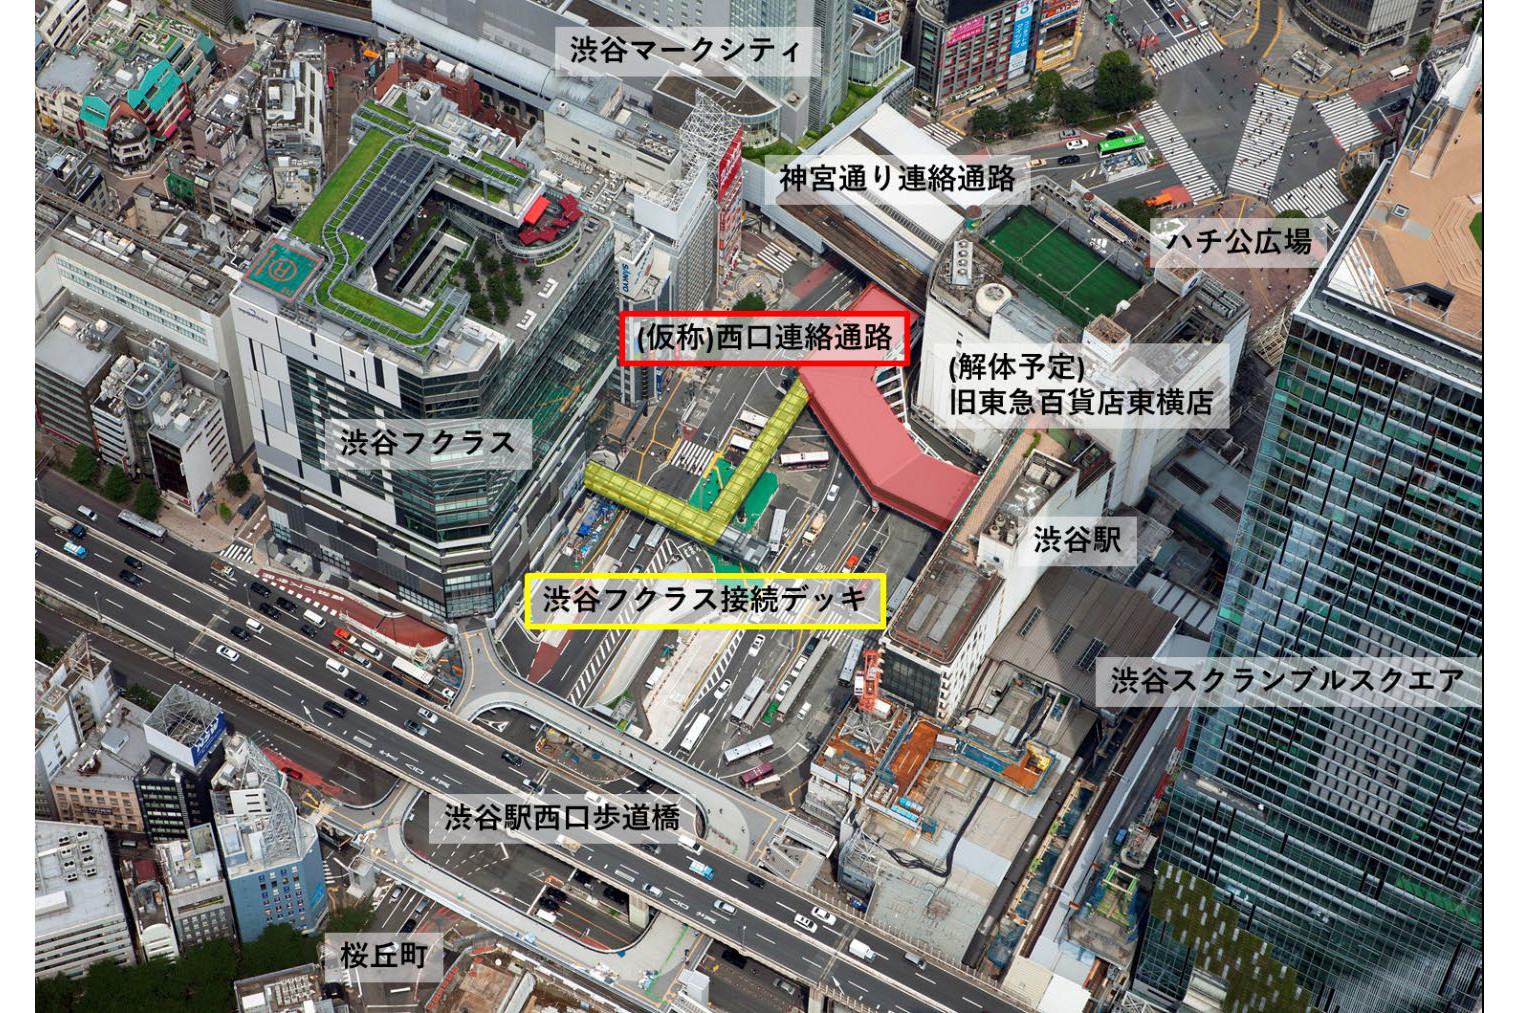 渋谷駅西口 新たな歩行者デッキ 西口連絡通路 渋谷フクラス接続デッキ 9月26日から供用開始 トラベル Watch